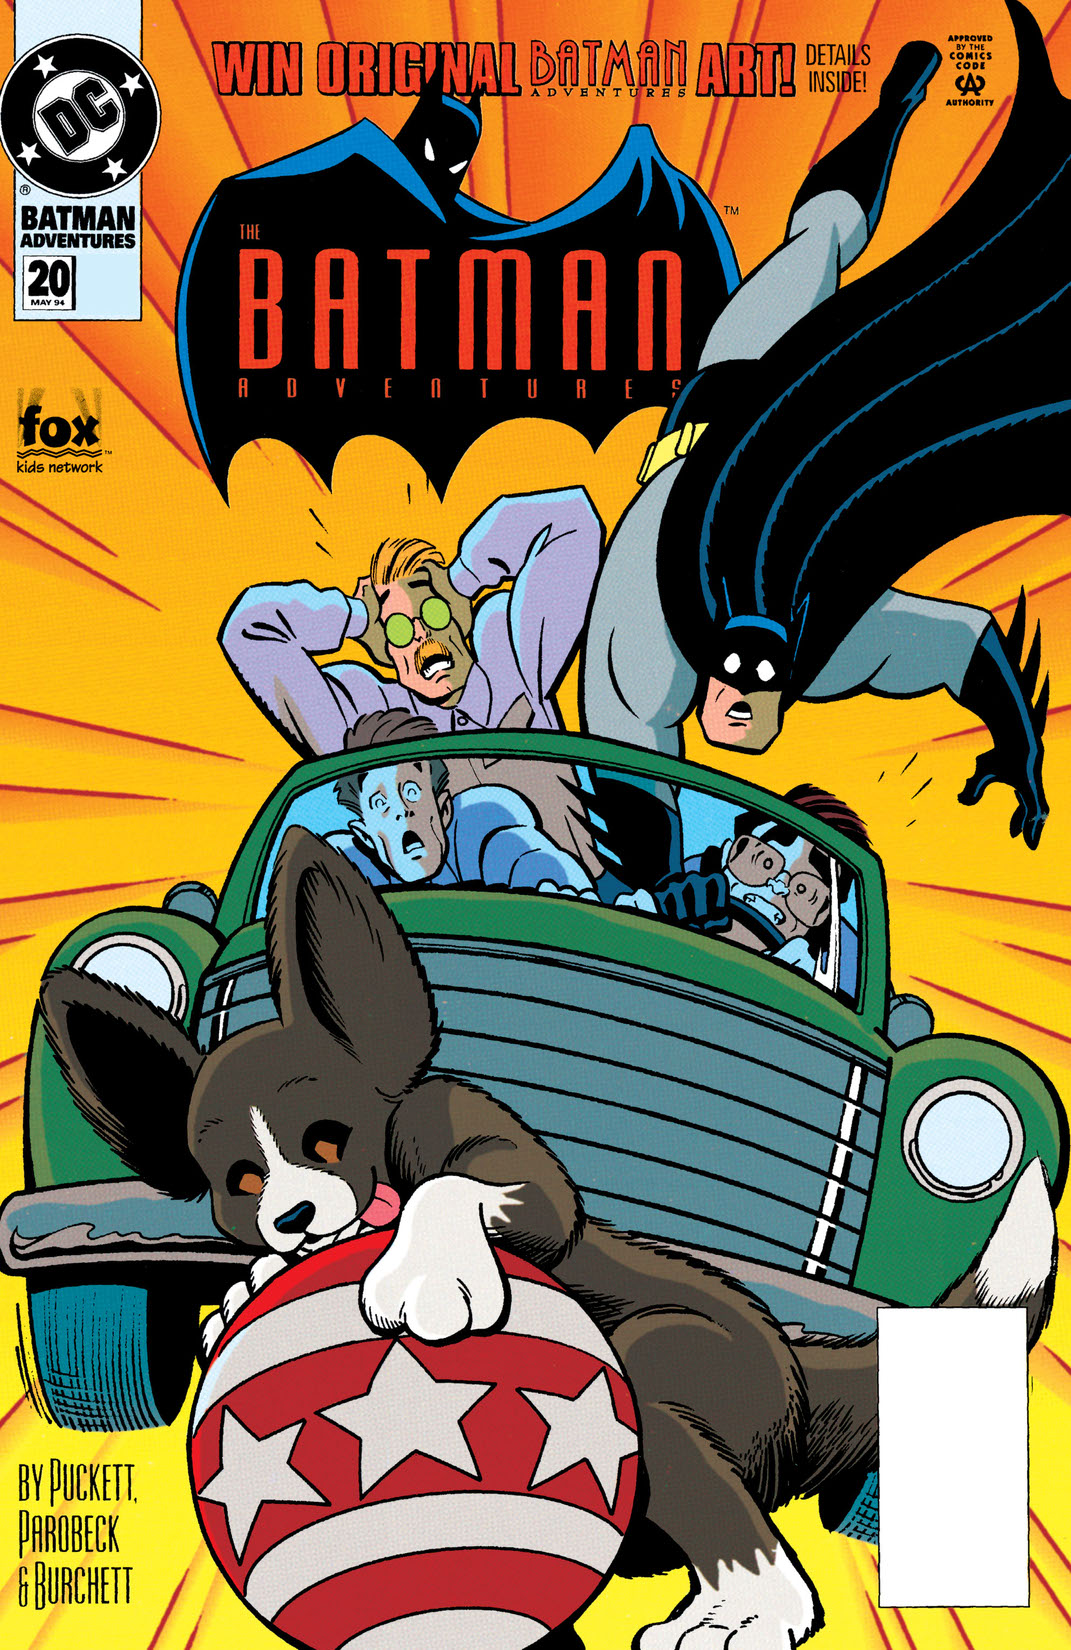 The Batman Adventures #20 preview images